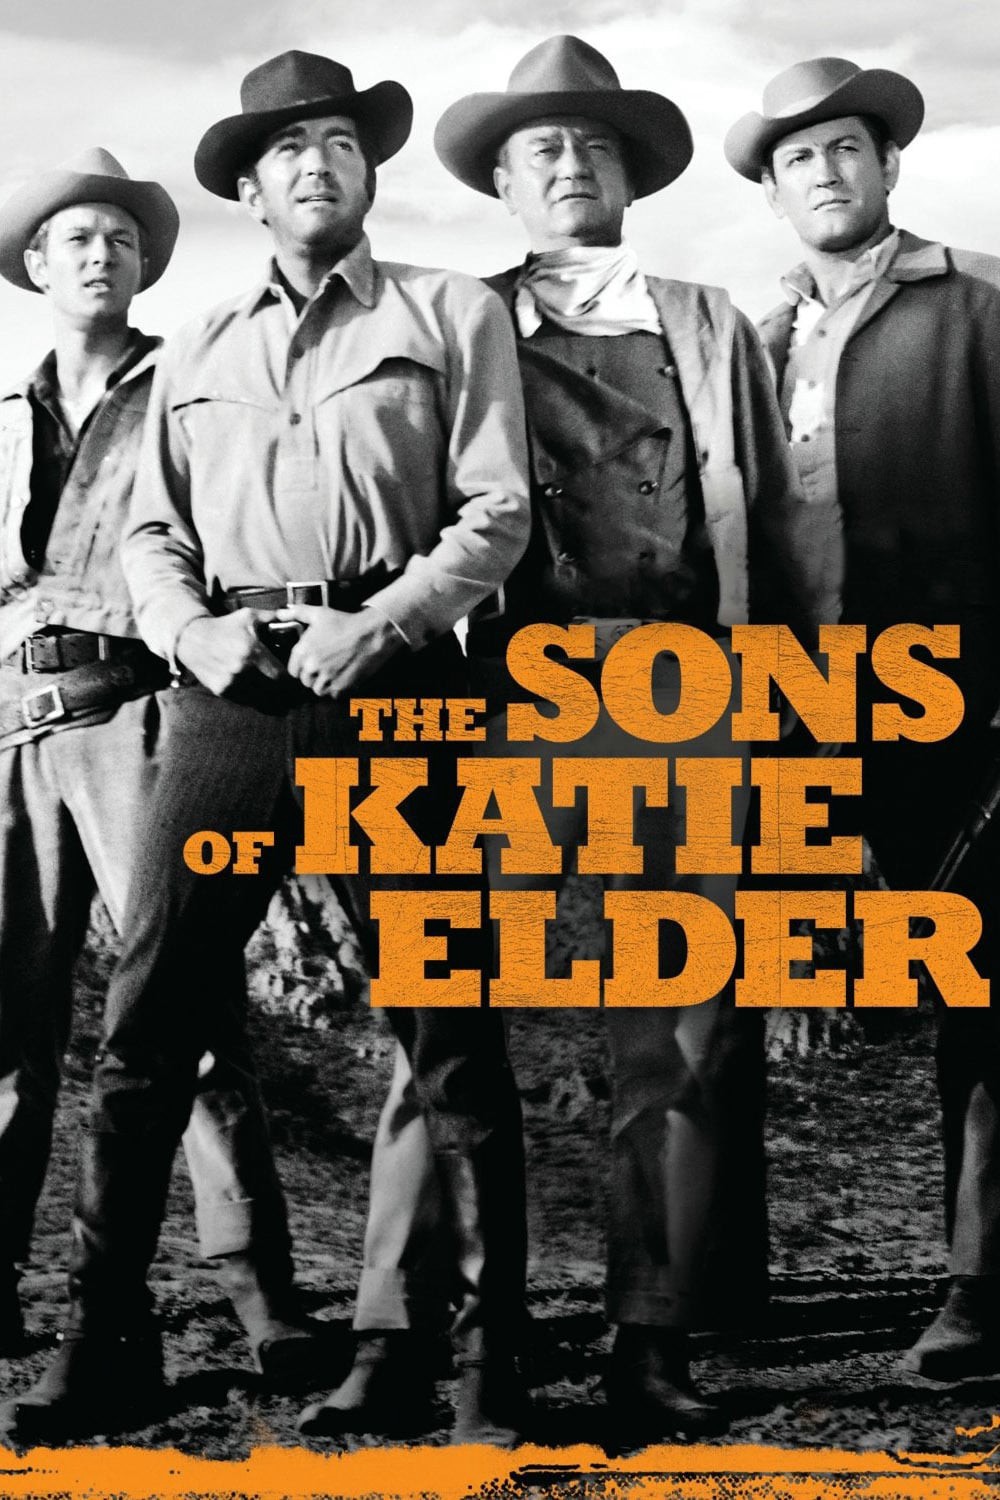 The Sons of Katie Elder | The Sons of Katie Elder (1965)